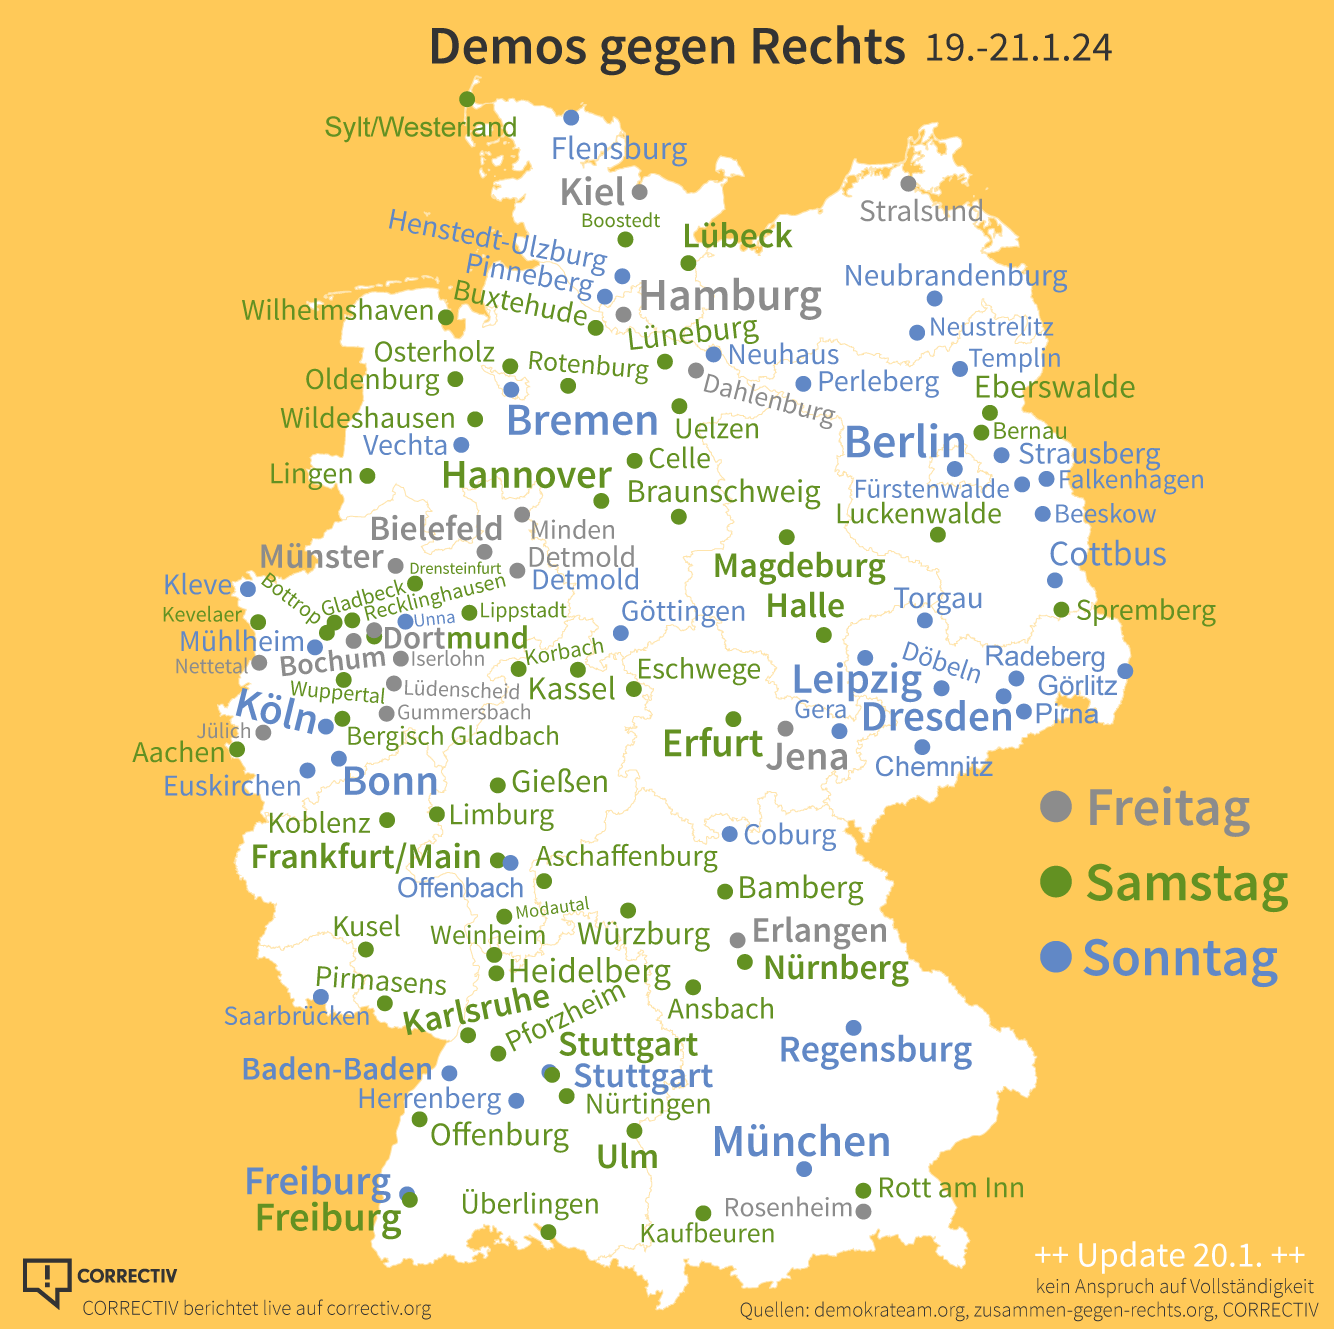 Die aktualisierte Deutschlandkarte zeigt Demos gegen Rechts in Deutschland an den Tagaen 19.1. 20.1. 21.1.2024 in Deutschland